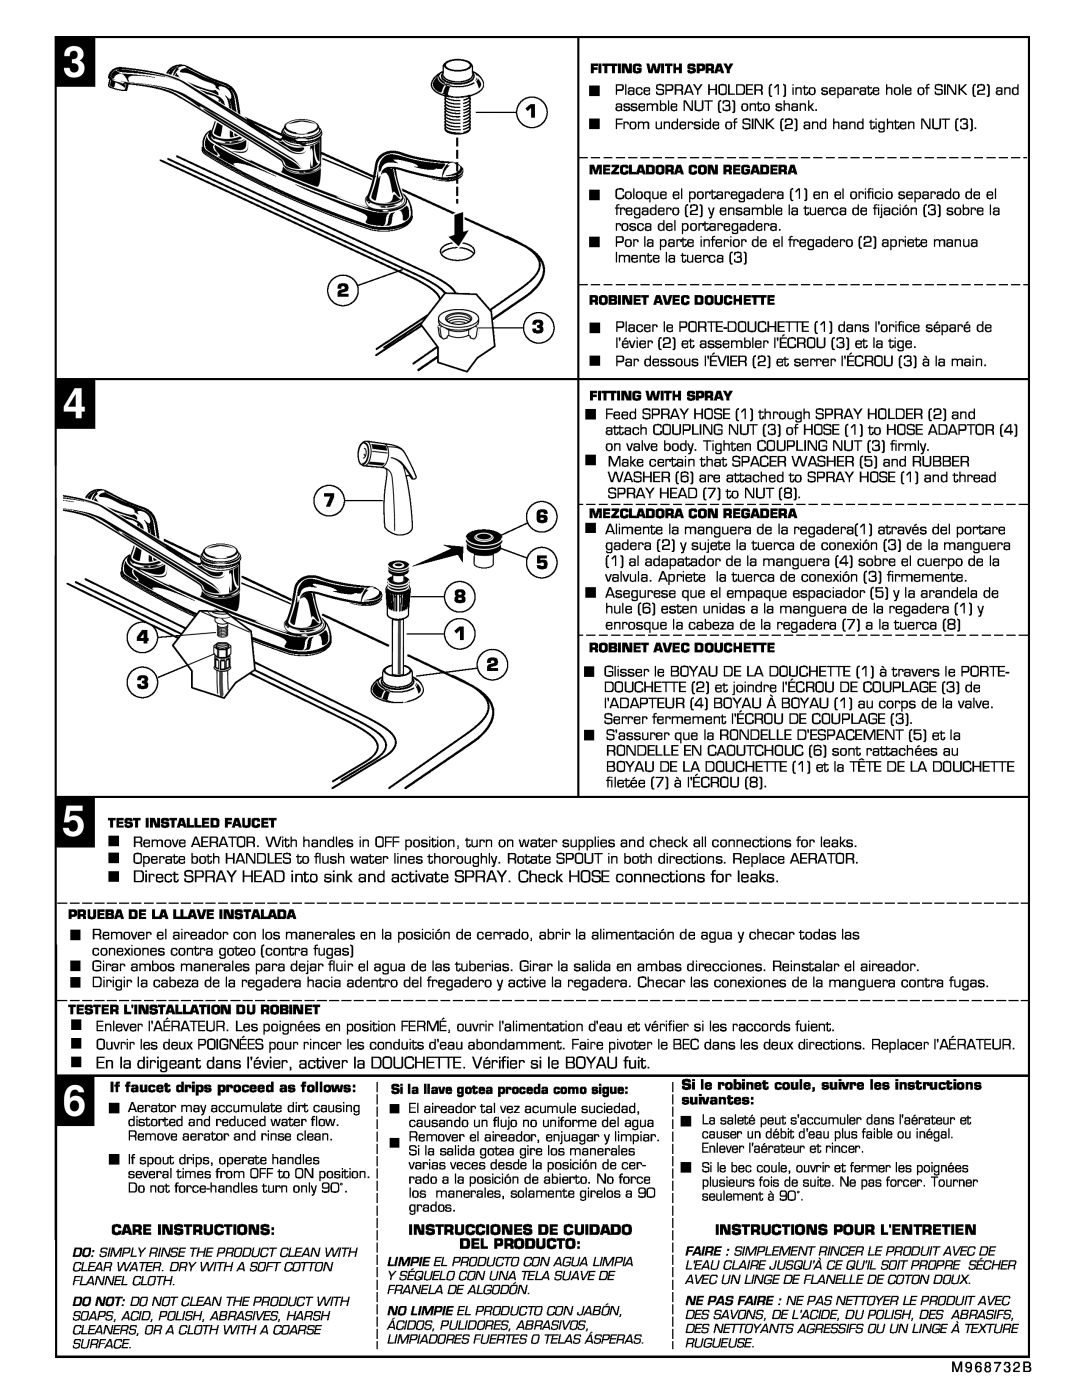 American Standard 4275.501 If faucet drips proceed as follows, Care Instructions, Instrucciones De Cuidado Del Producto 